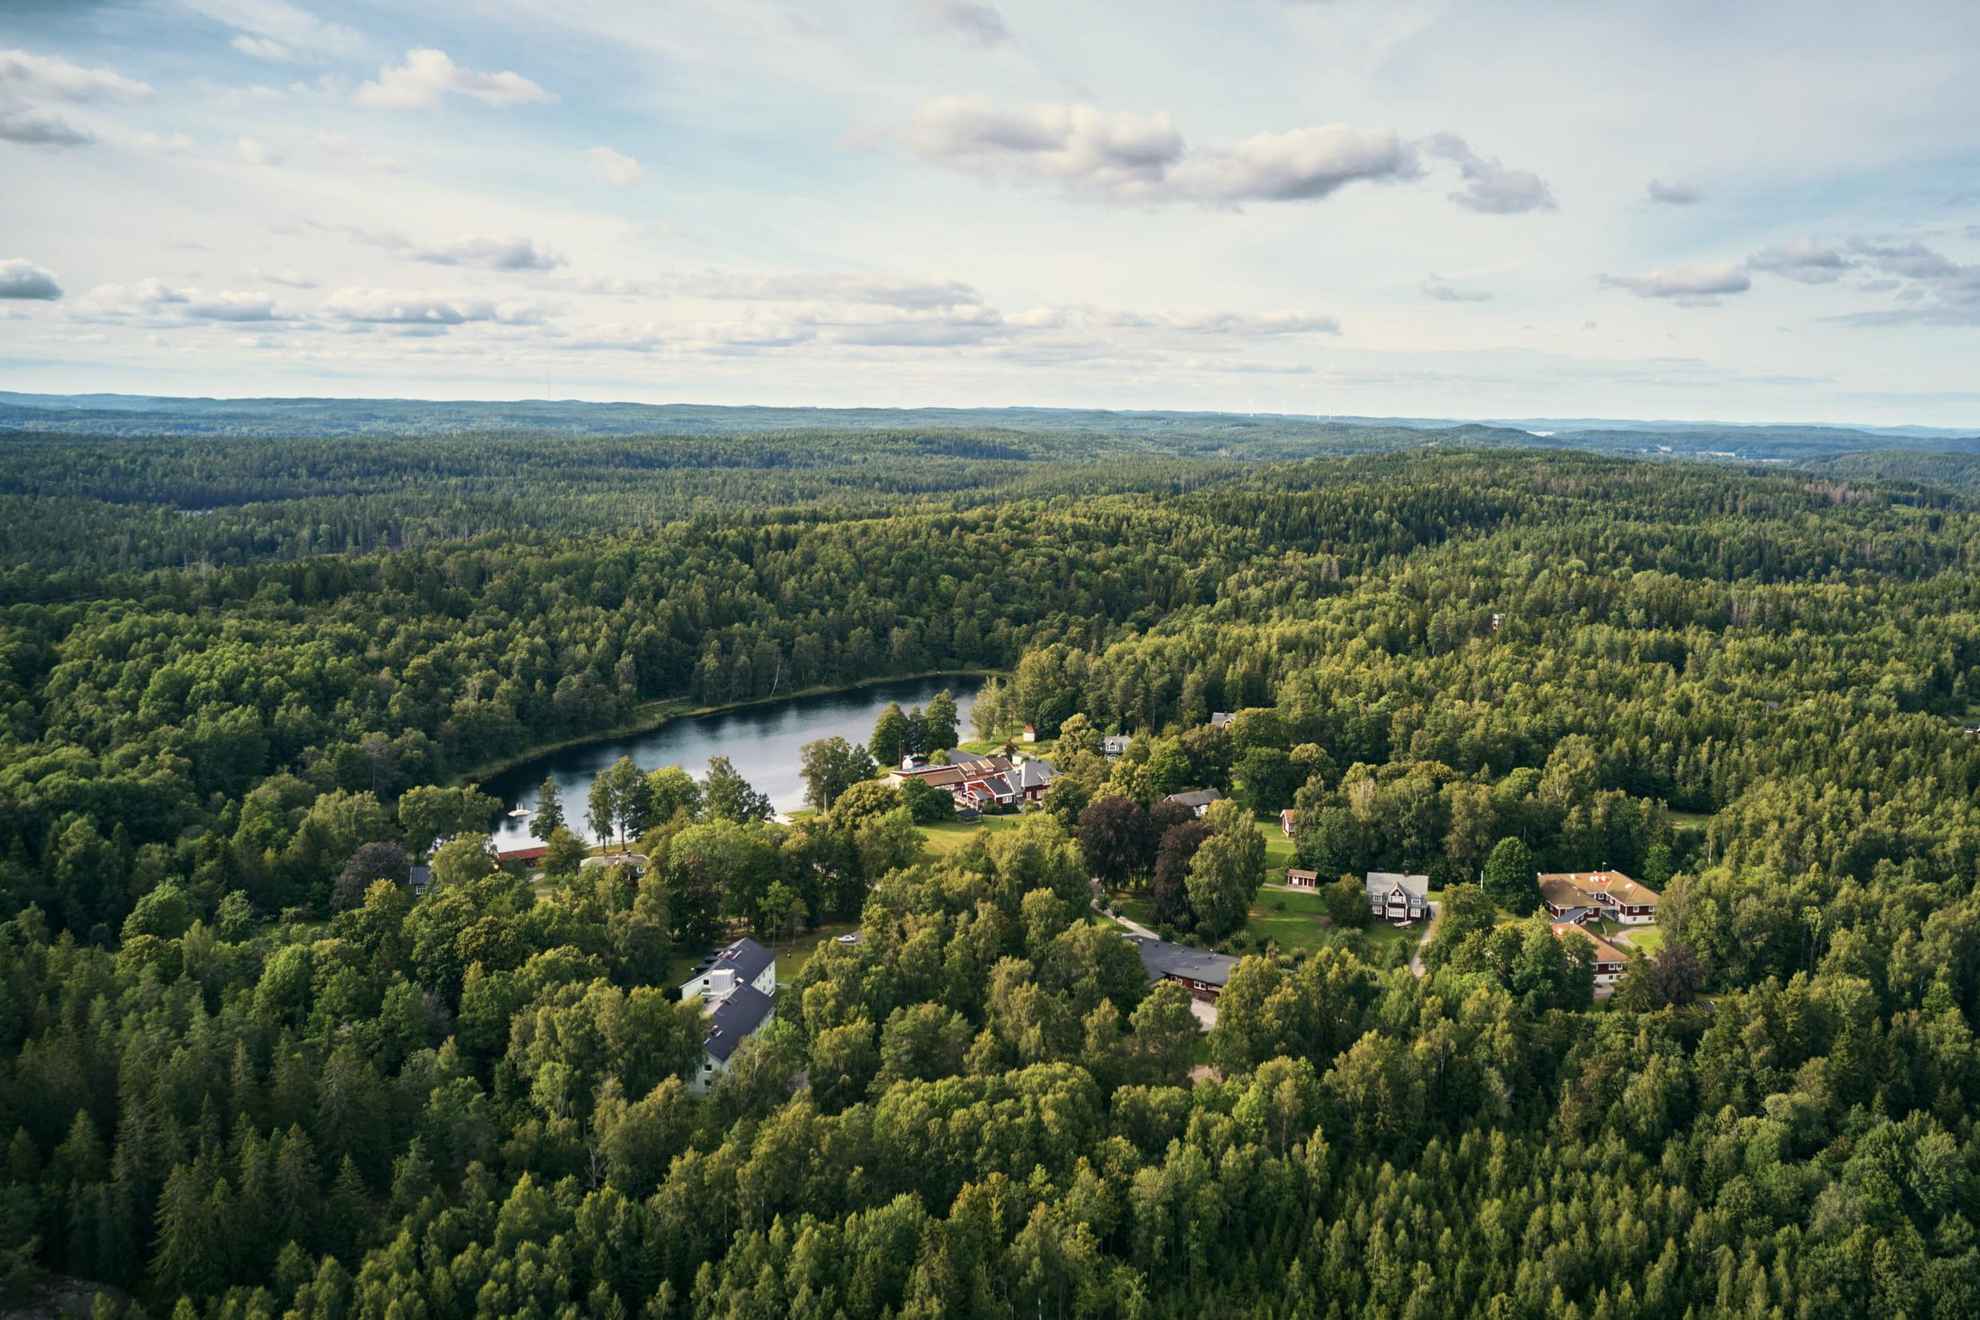 Vue aérienne de la forêt Kroppefjäll en été. On voit plusieurs maisons en bois disséminées entre les arbres de la forêt.